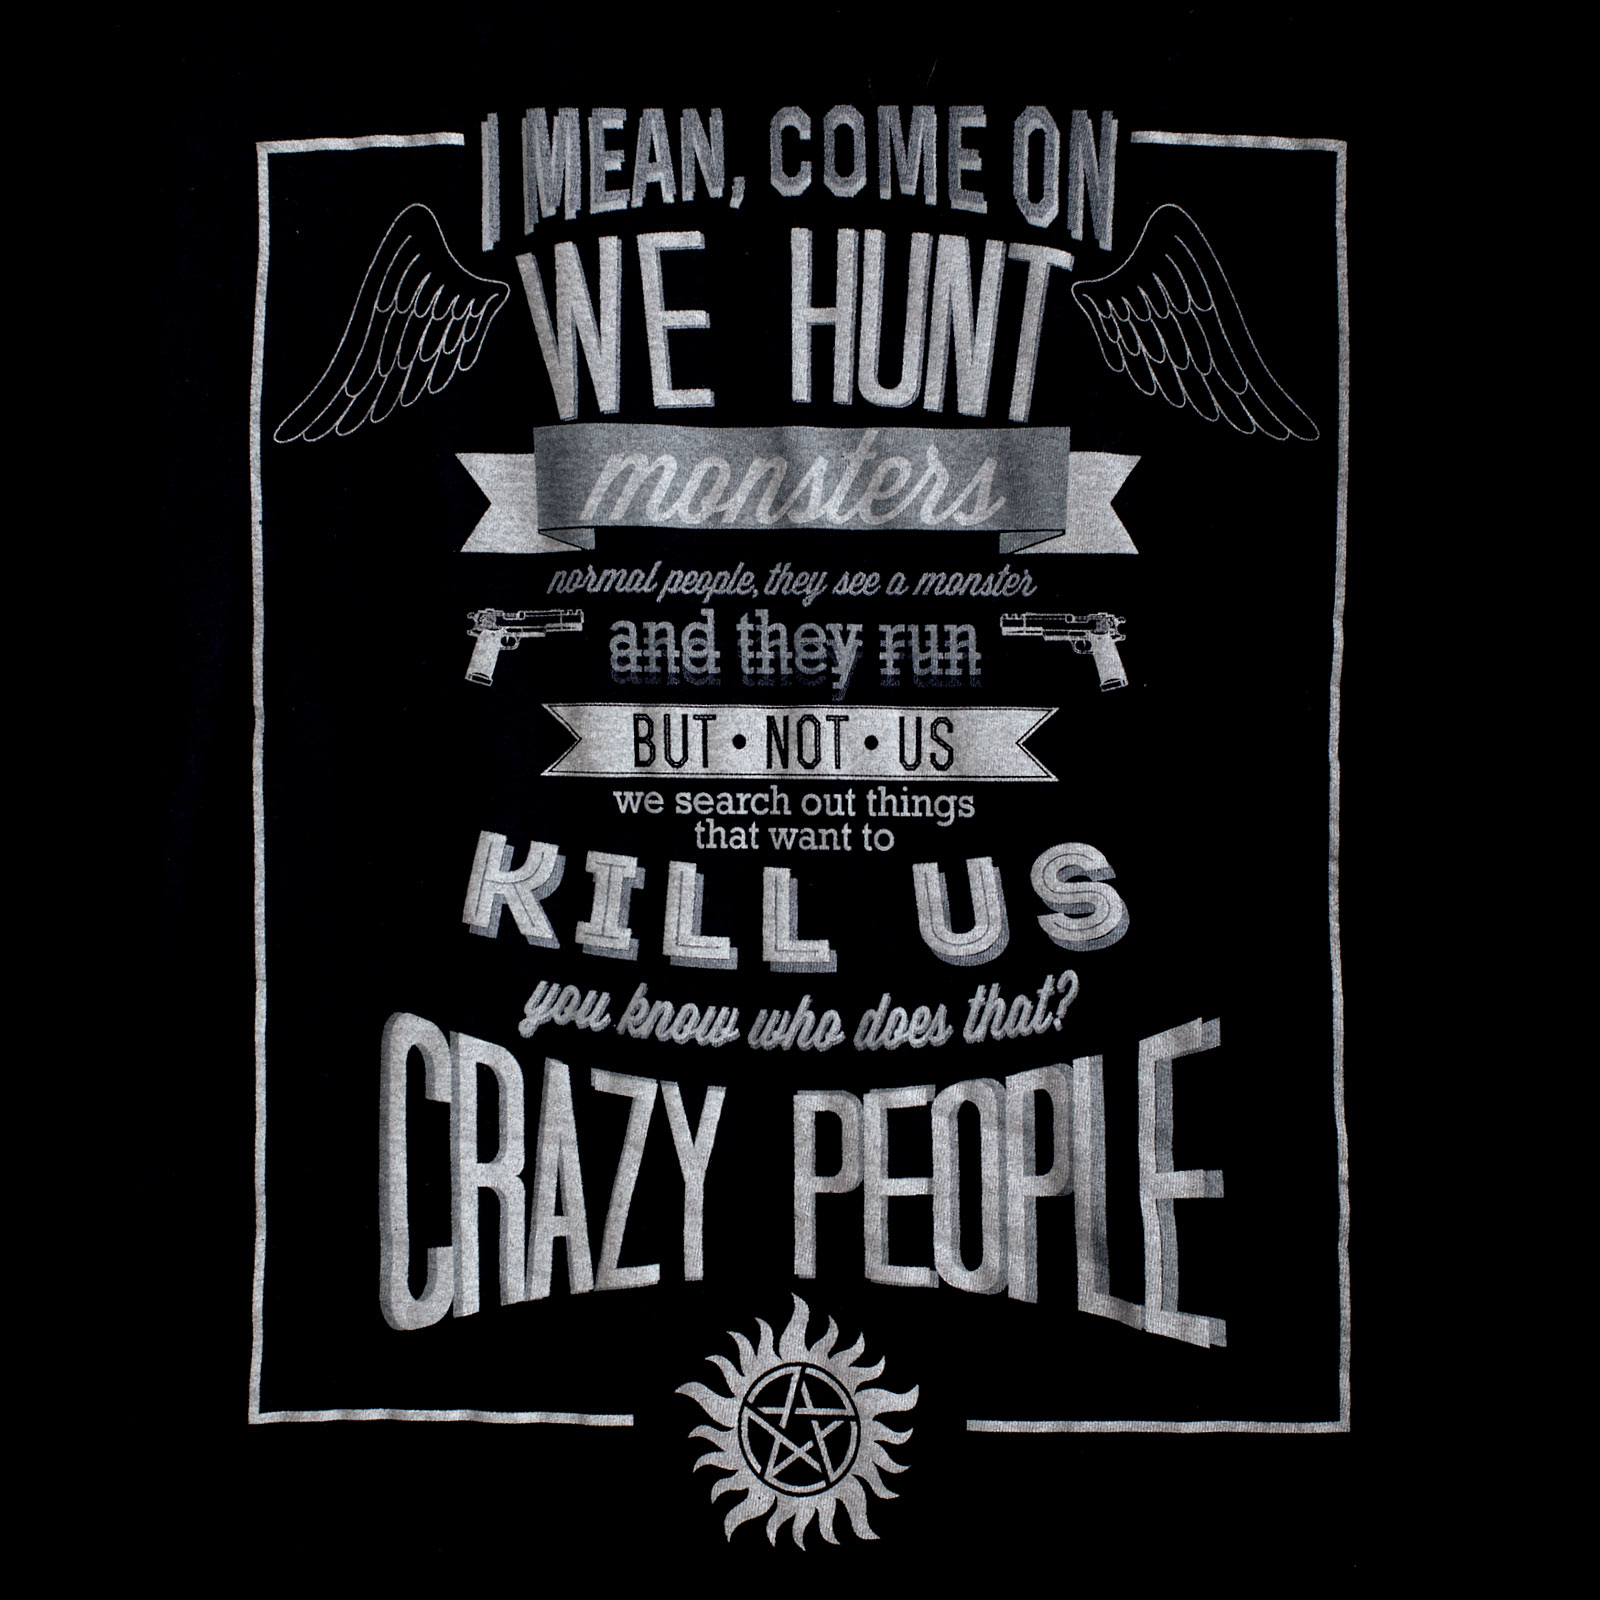 Supernatural - Crazy People Girlie Shirt black